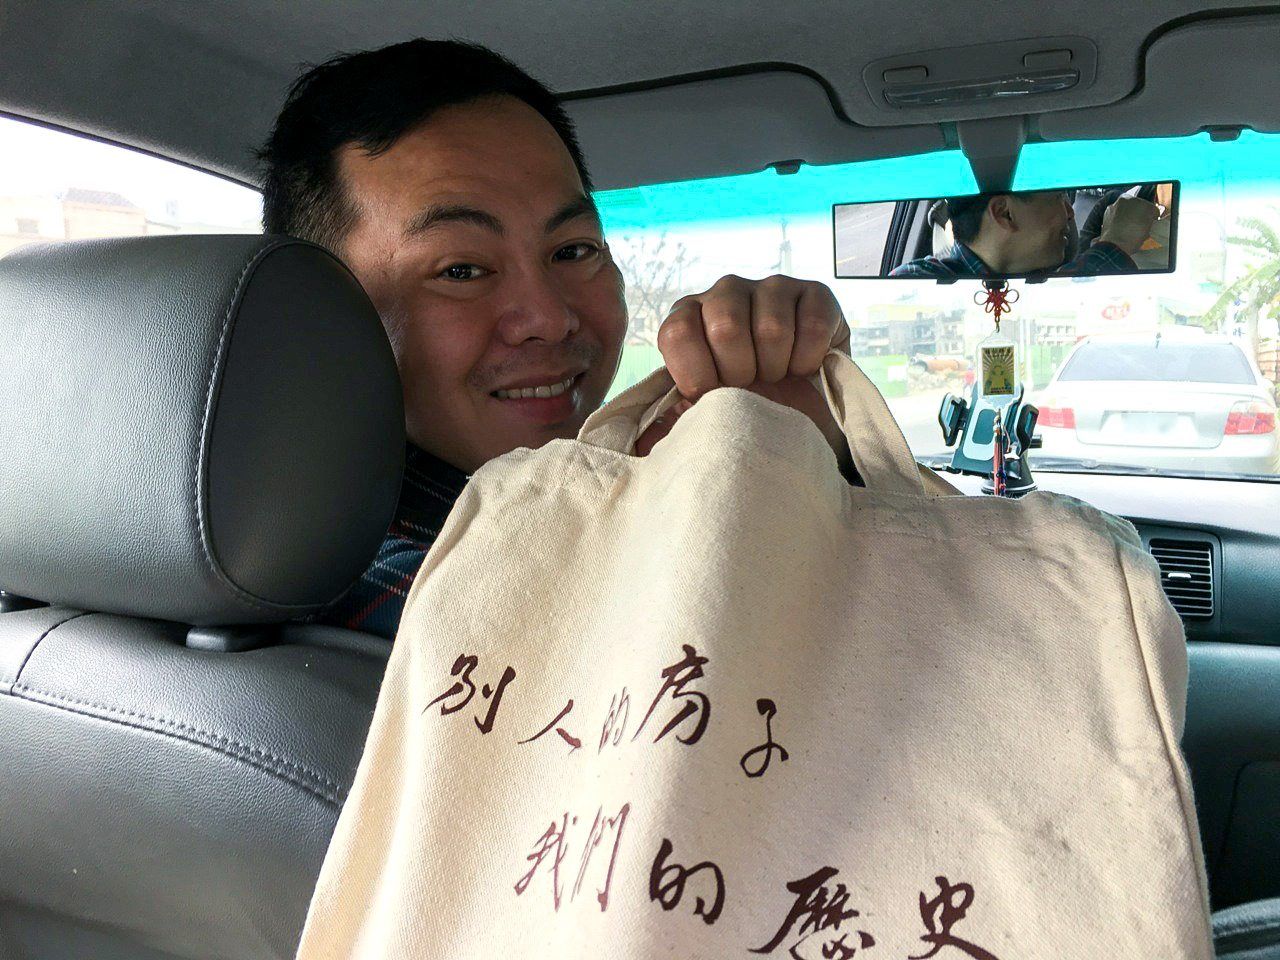 張敬業先生手持「鹿港囝仔」製作的環保提袋，上面印製「別人的房子，我們的歴史」的文字（渡邊義孝先生提供）